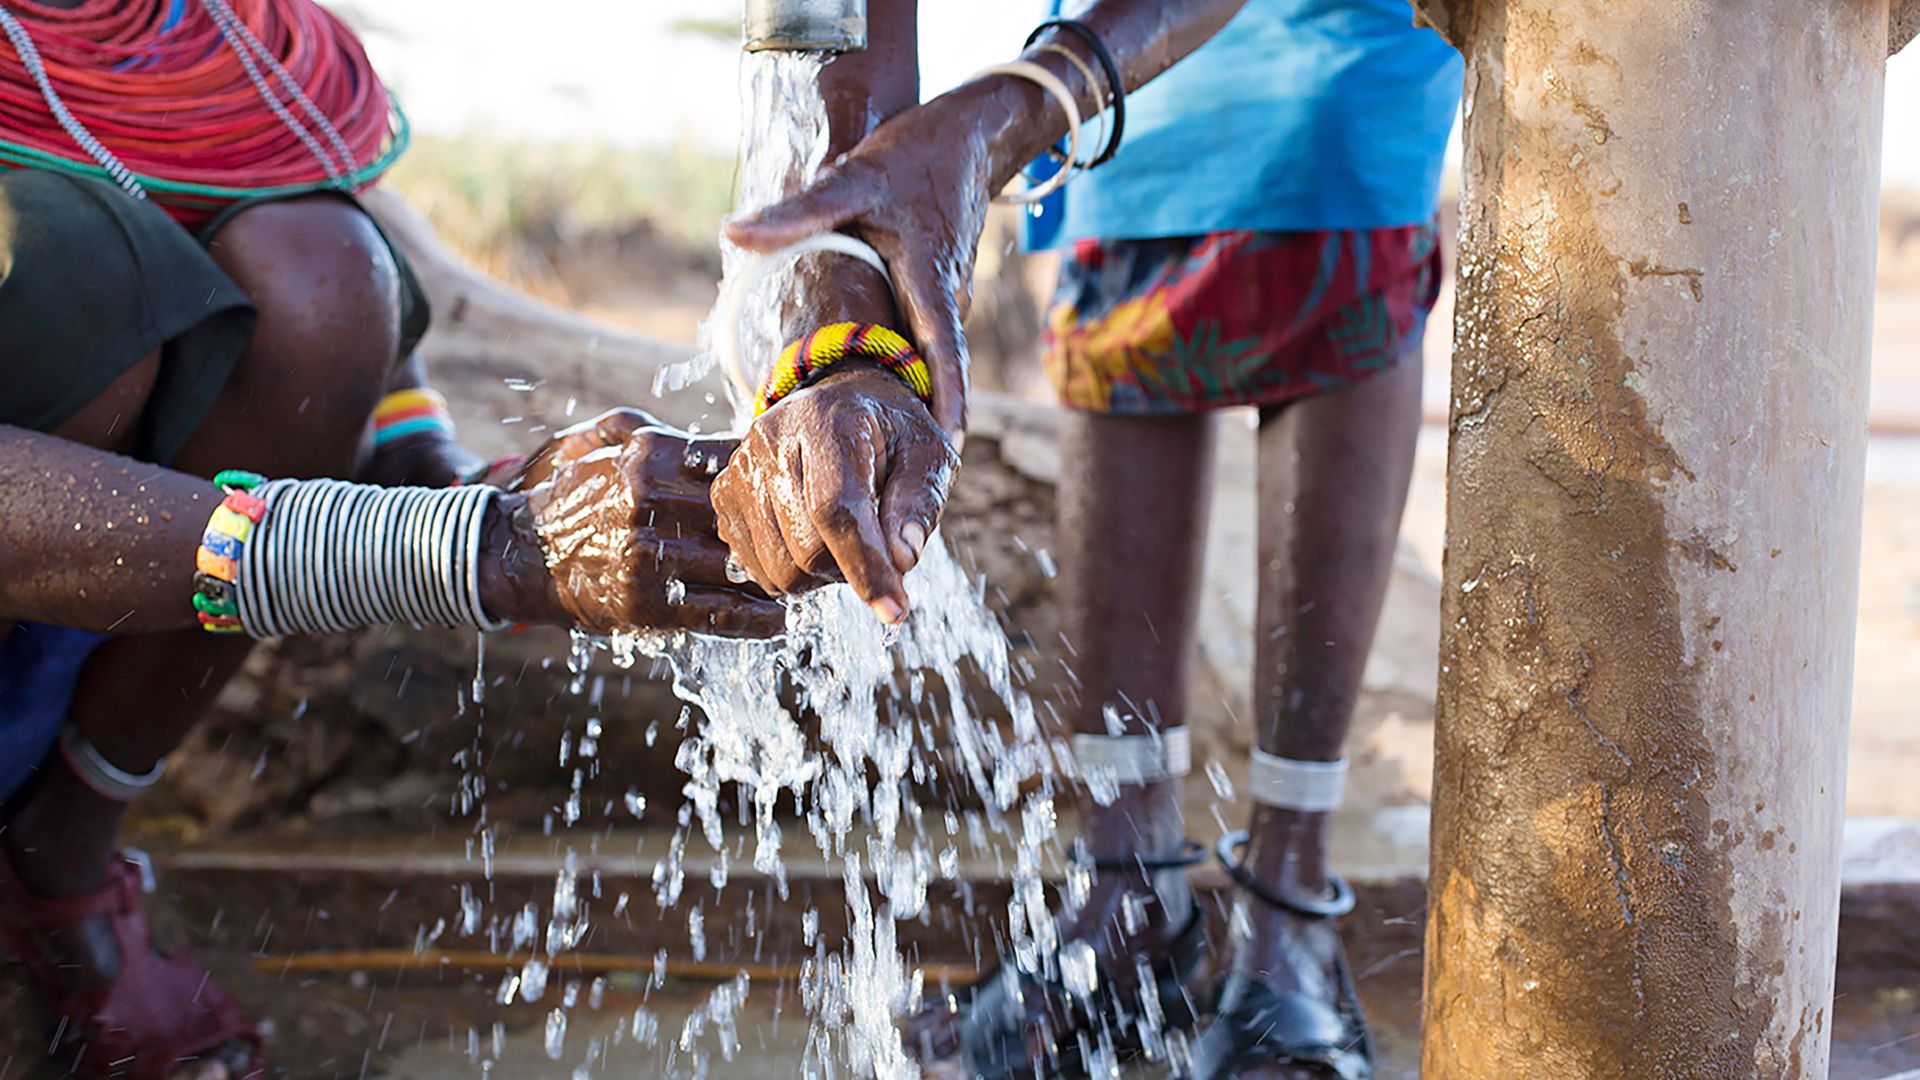 Dettaglio mani africane che si lavano le mani